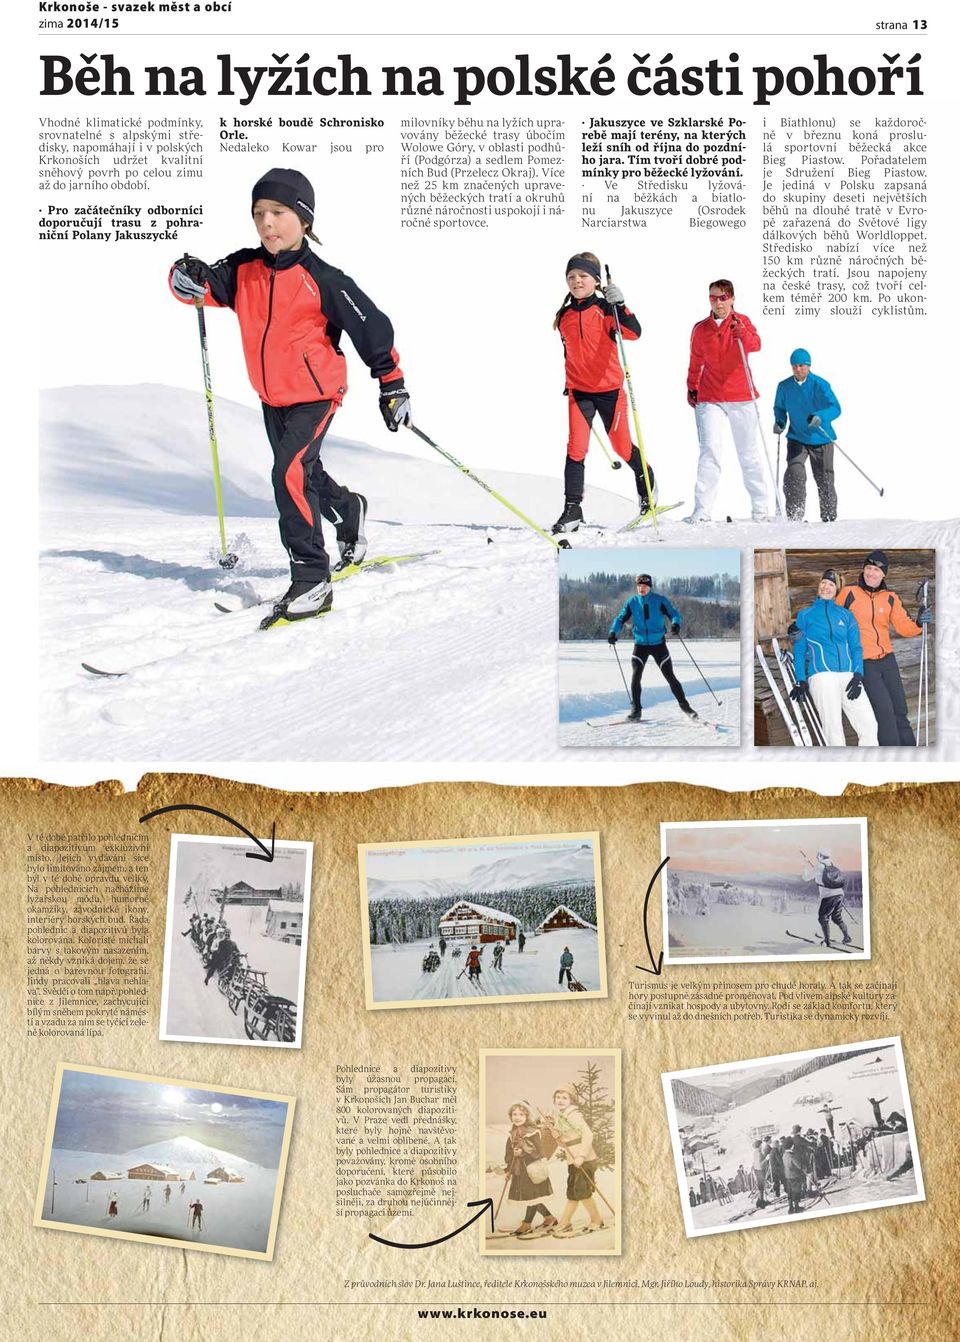 Nedaleko Kowar jsou pro milovníky běhu na lyžích upravovány běžecké trasy úbočím Wolowe Góry, v oblasti podhůří (Podgórza) a sedlem Pomezních Bud (Przelecz Okraj).